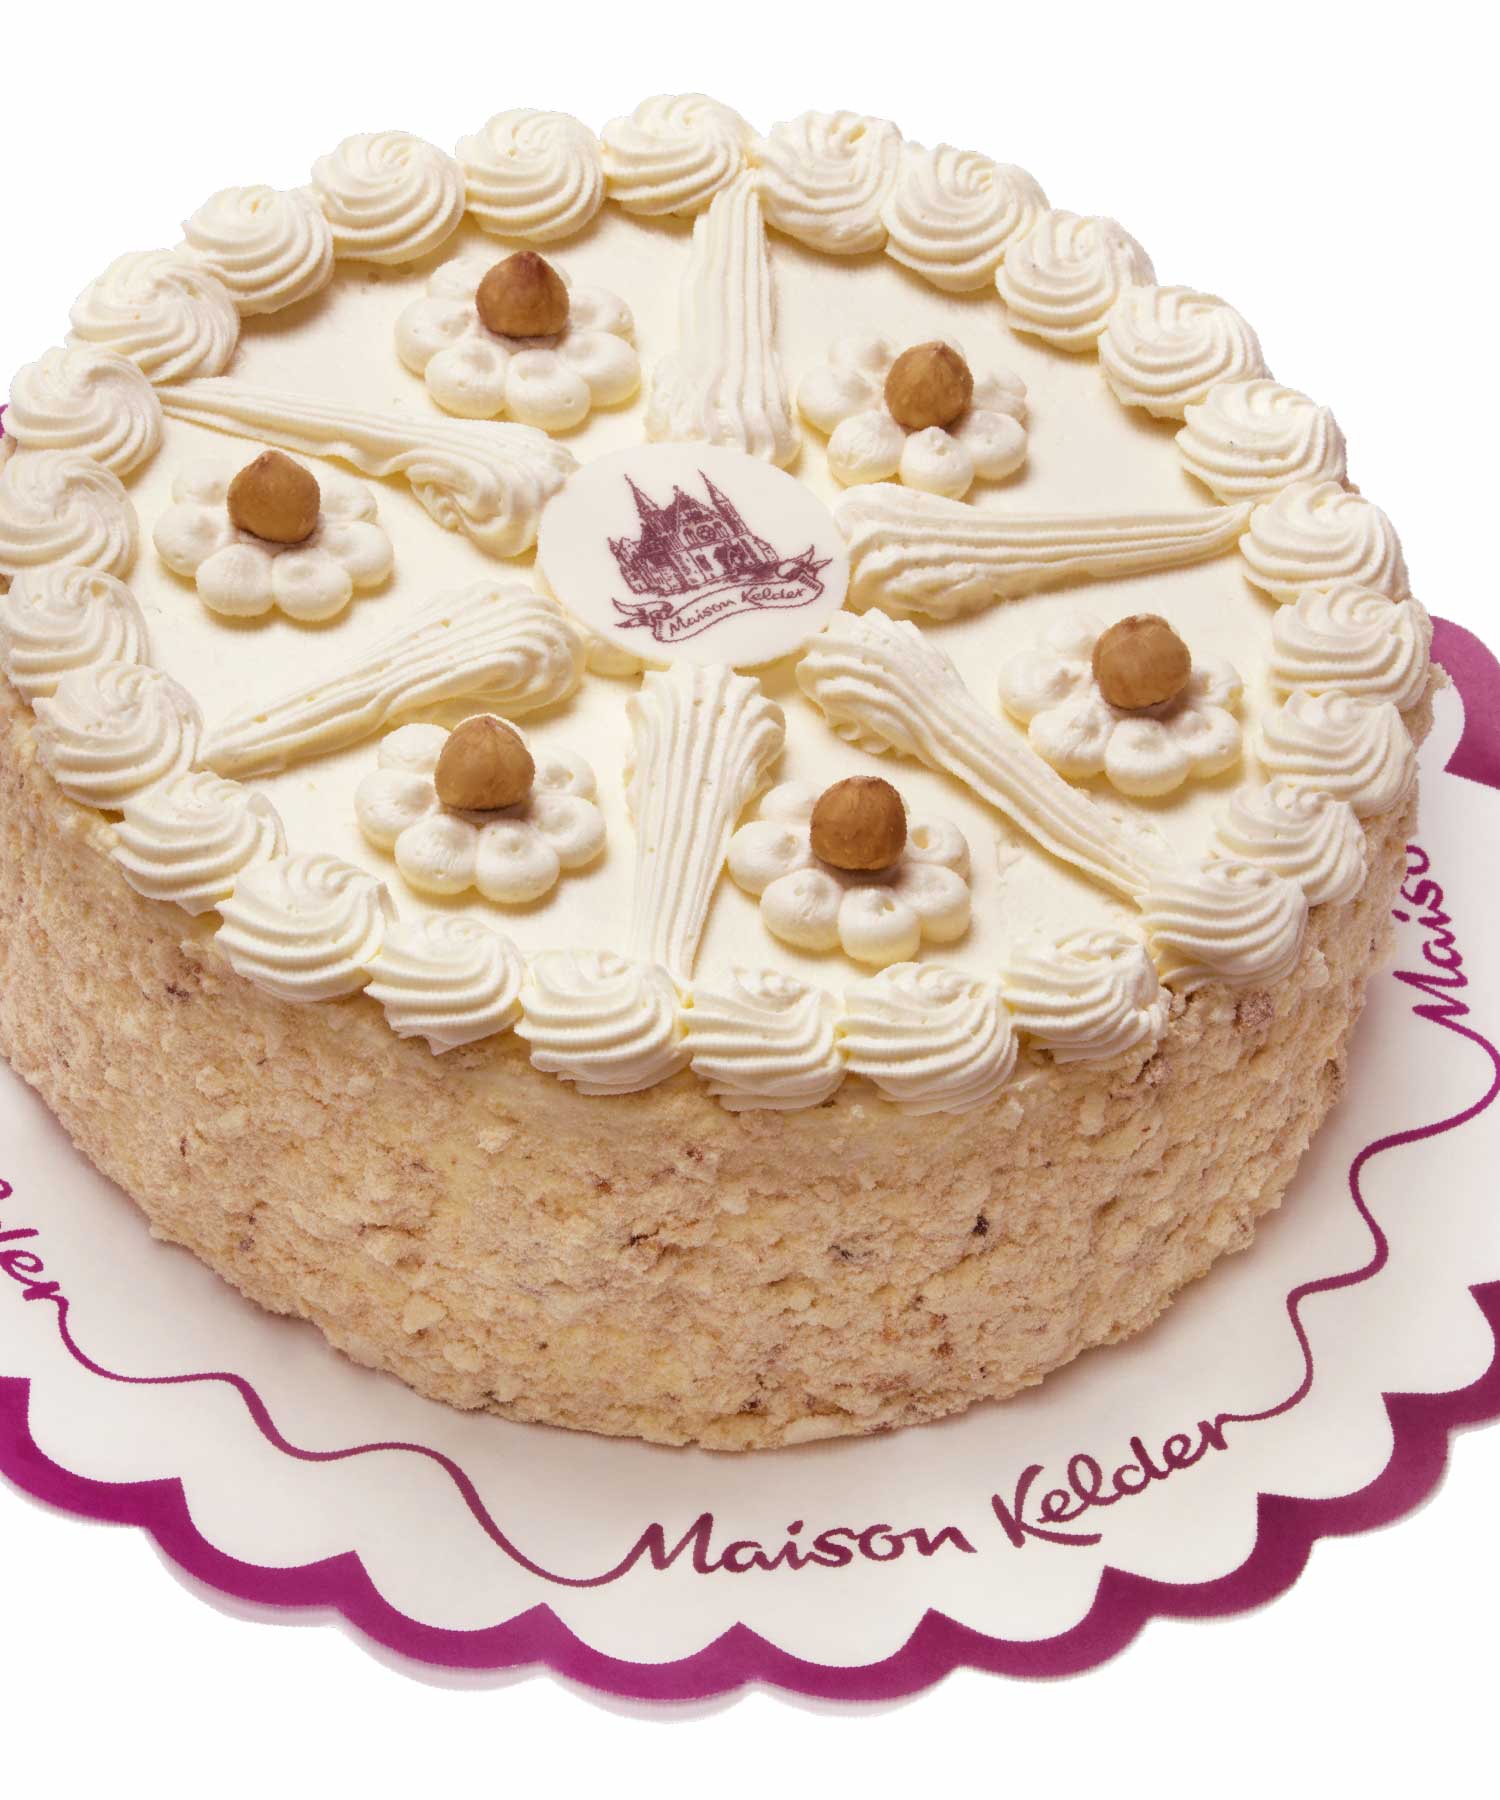 Maison Kelder hazelnoot taart M-space